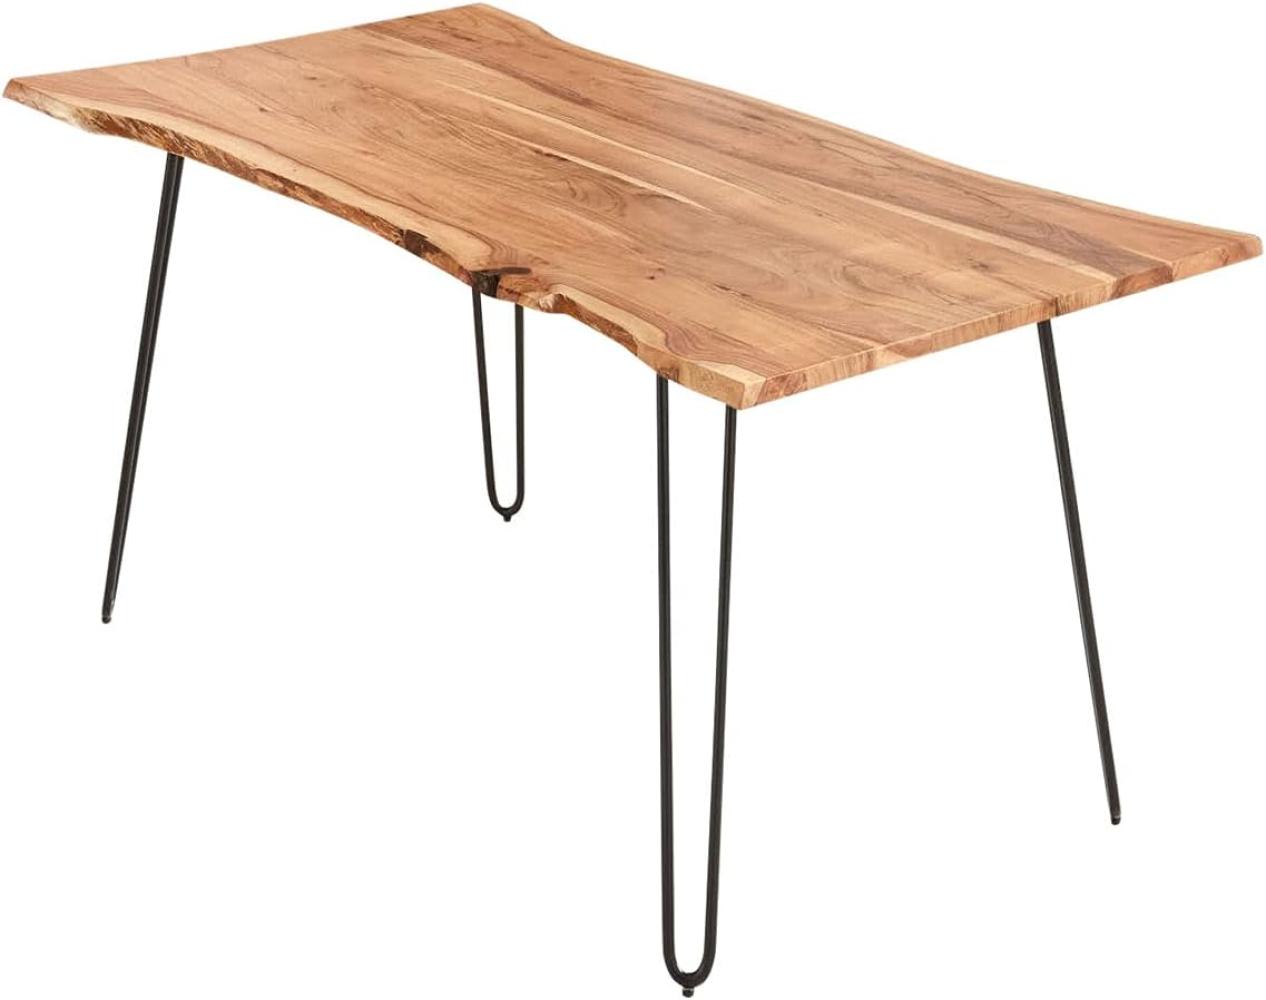 SAM Esszimmertisch 160x85cm Hannah, echte Baumkante, Akazienholz naturfarben, massiver Baumkantentisch mit Hairpin-Gestell Mattschwarz Bild 1